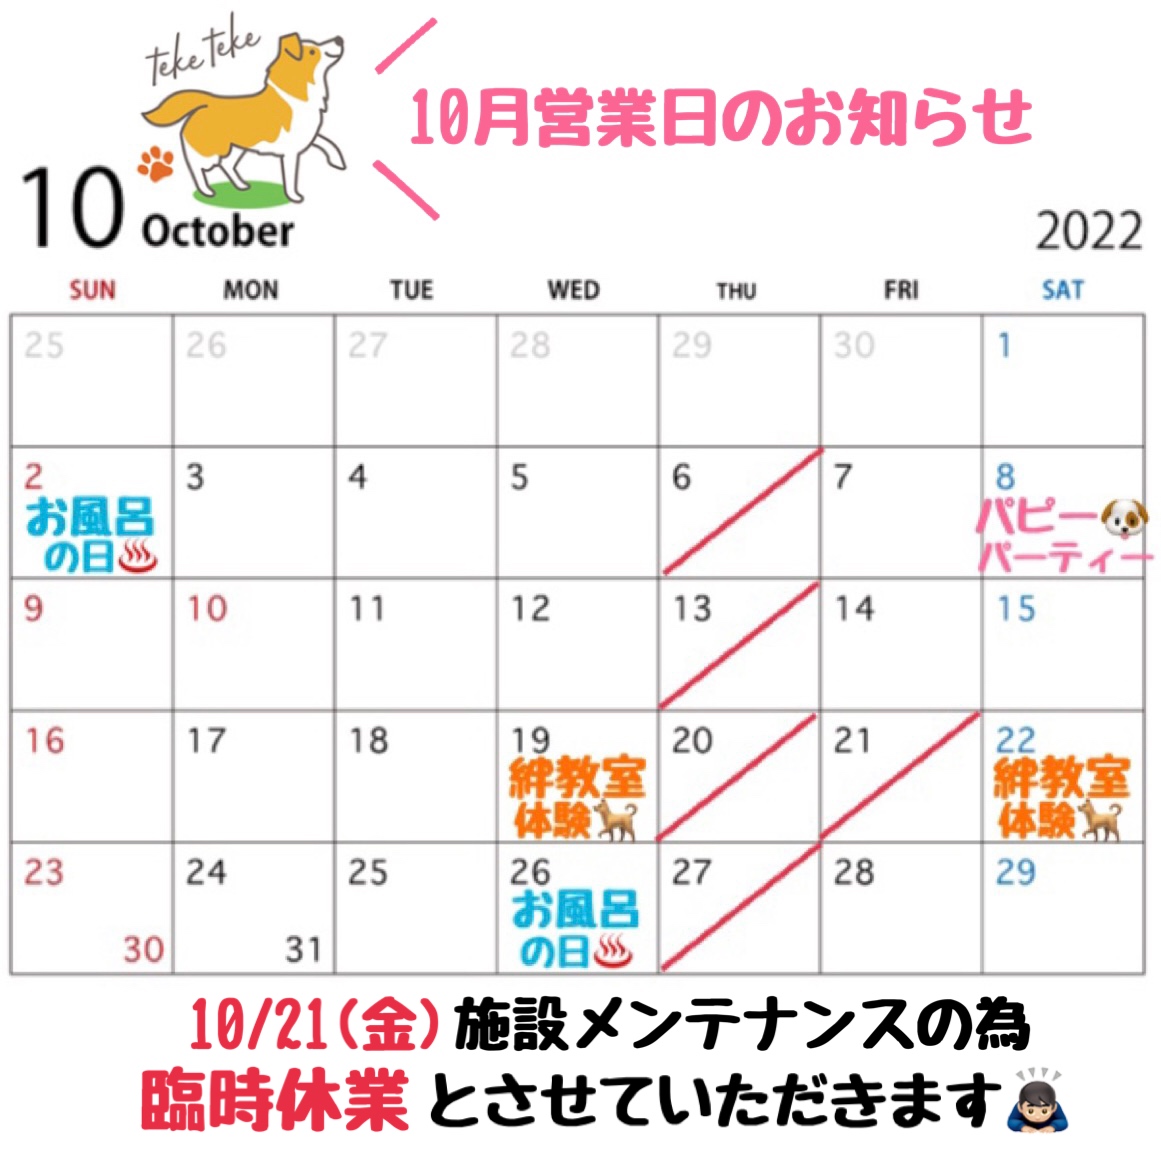 10月営業日カレンダーのお知らせです🗓